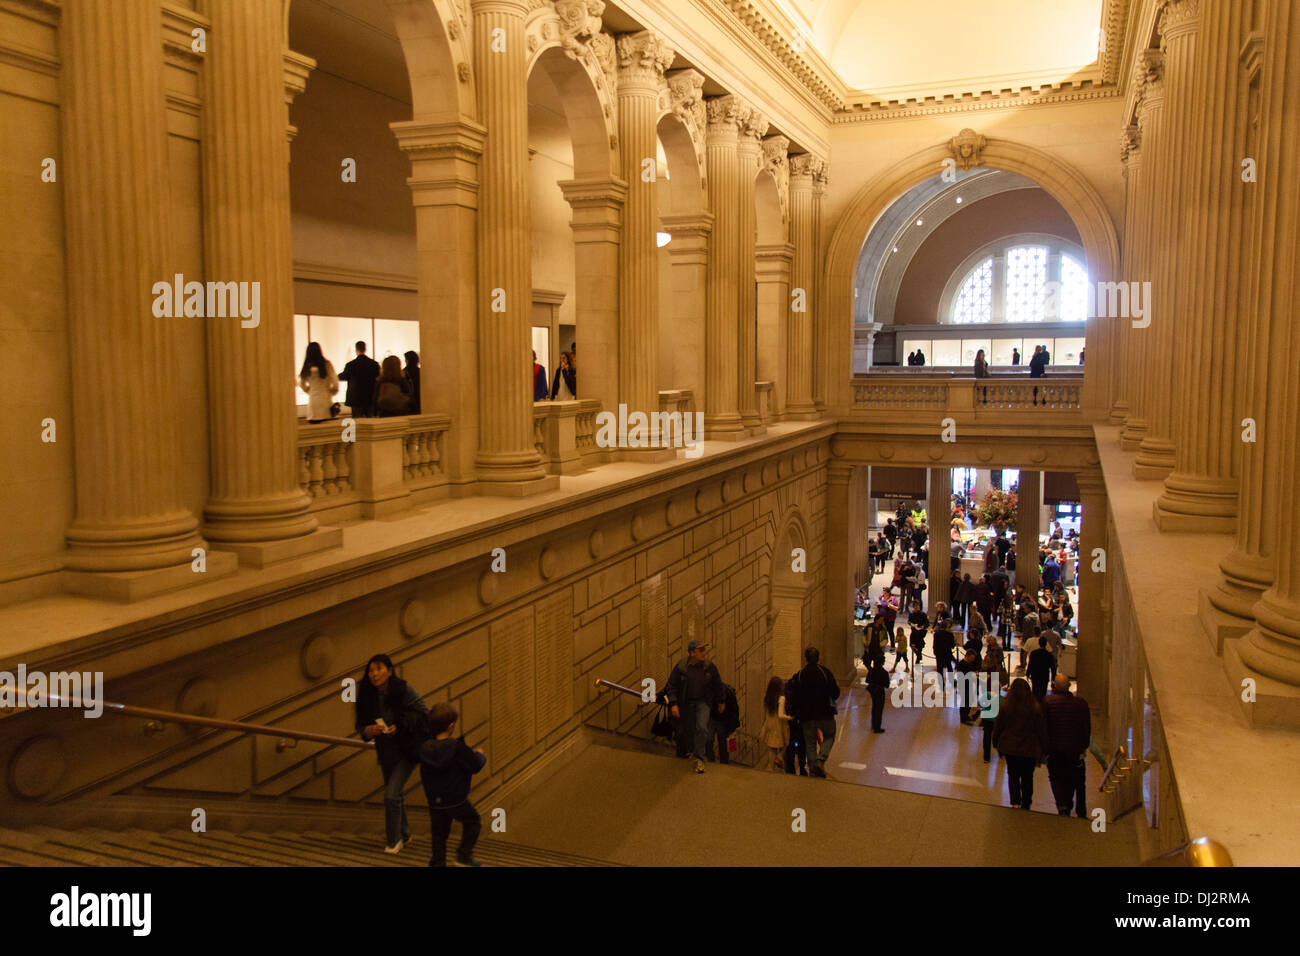 Les escaliers de la grande salle au Metropolitan Museum of Art New York, États-Unis d'Amérique. Banque D'Images